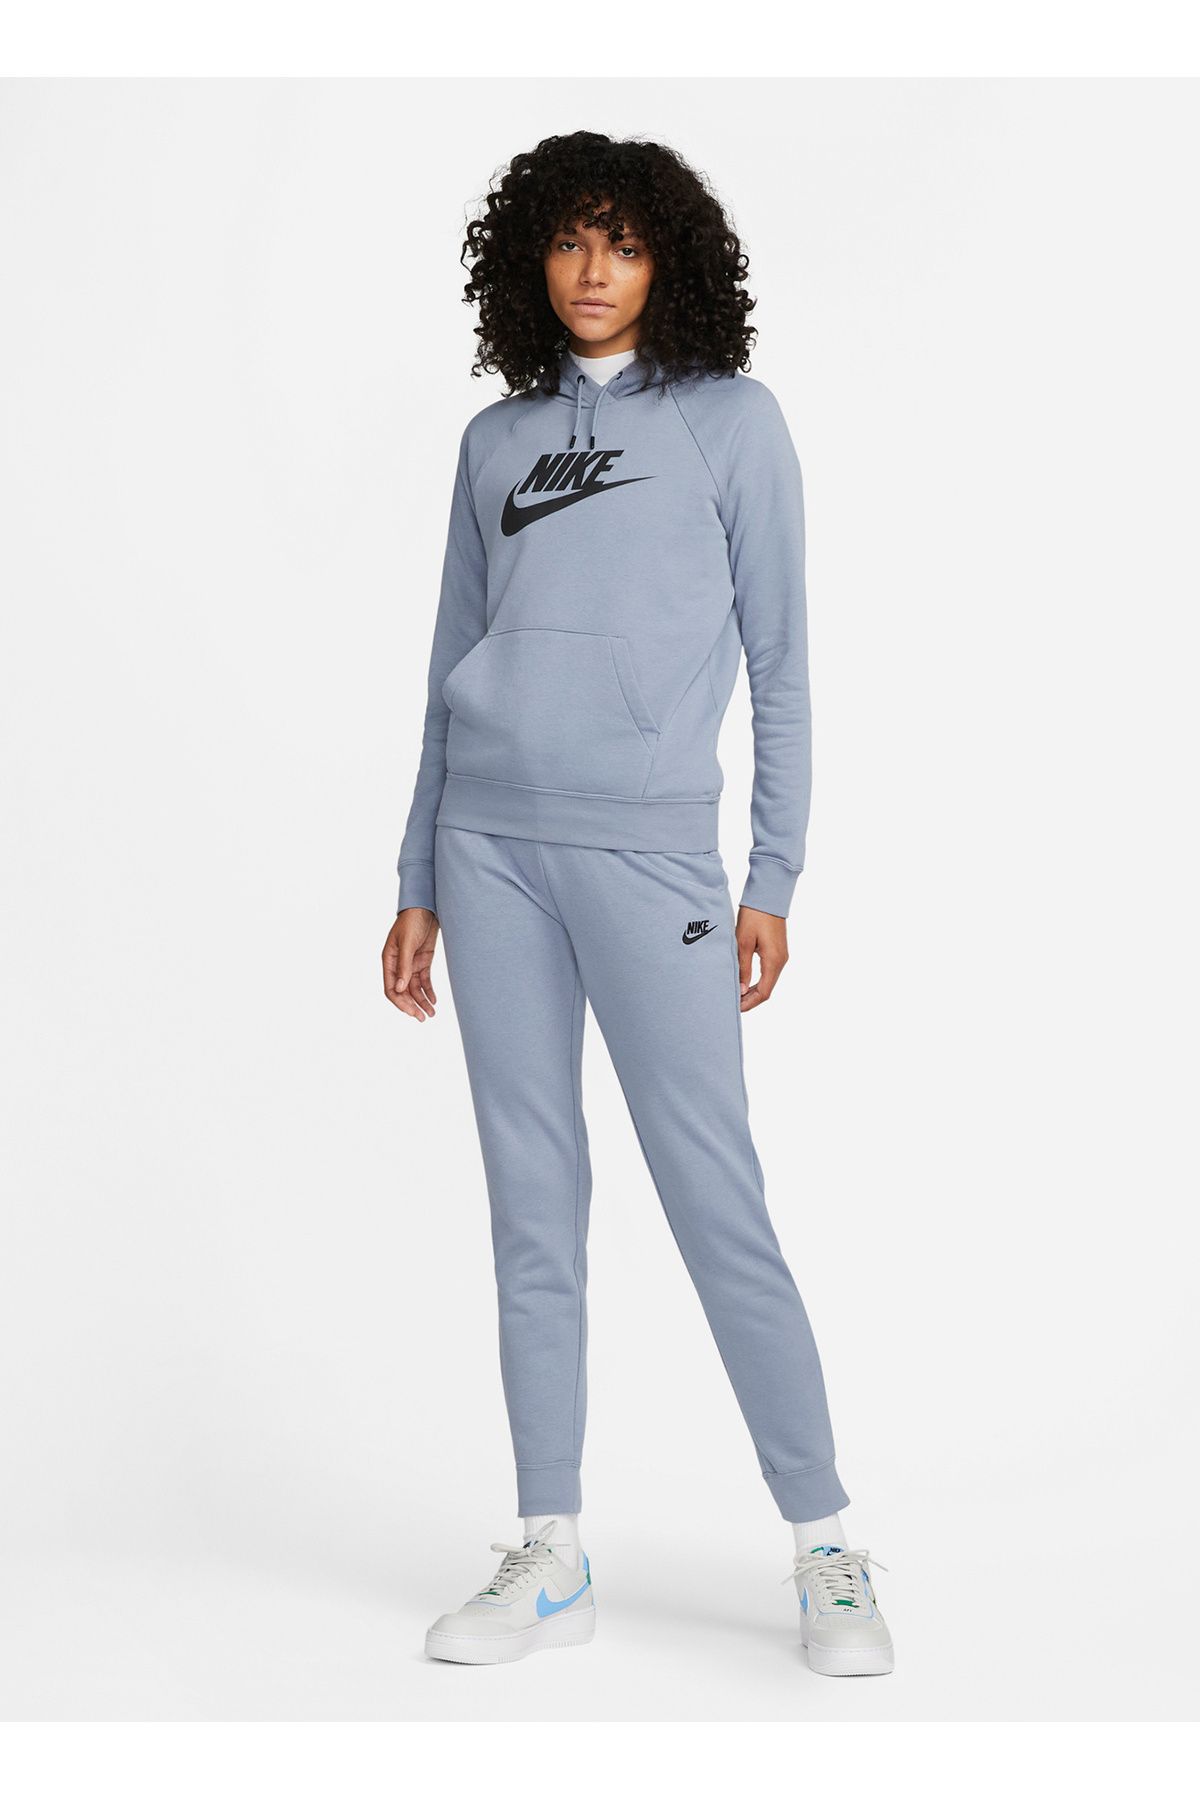 Nike Standart Mavi Kadın Eşofman Altı DX2320-493 W ESSNTL PANT REG FLC MR